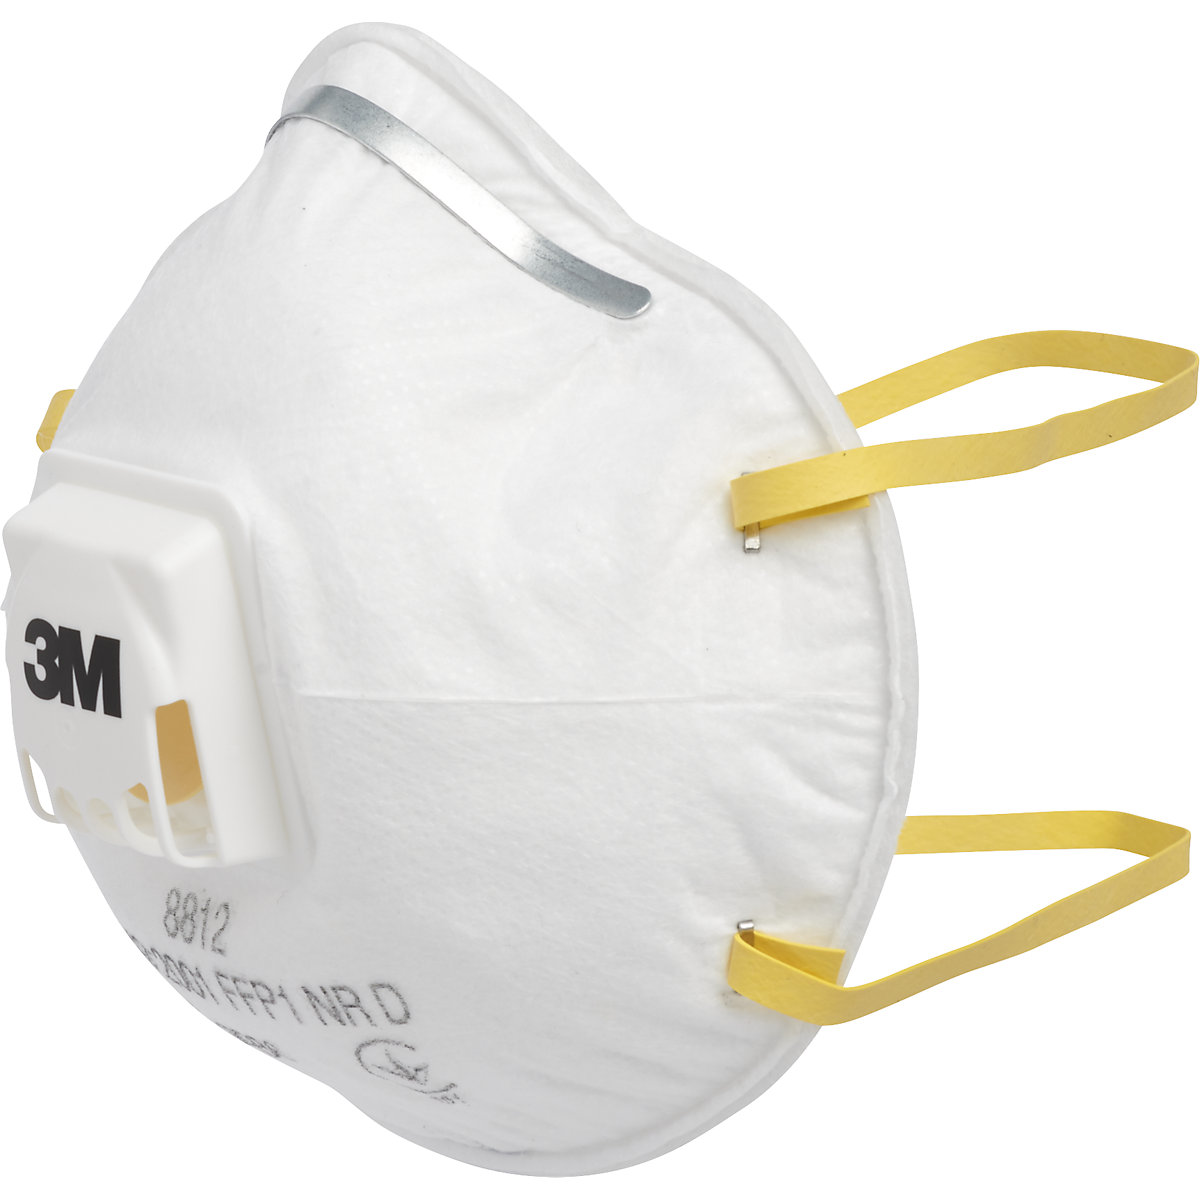 Masque de protection respiratoire 8812 FFP1 NR D avec clapet d'expiration - 3M